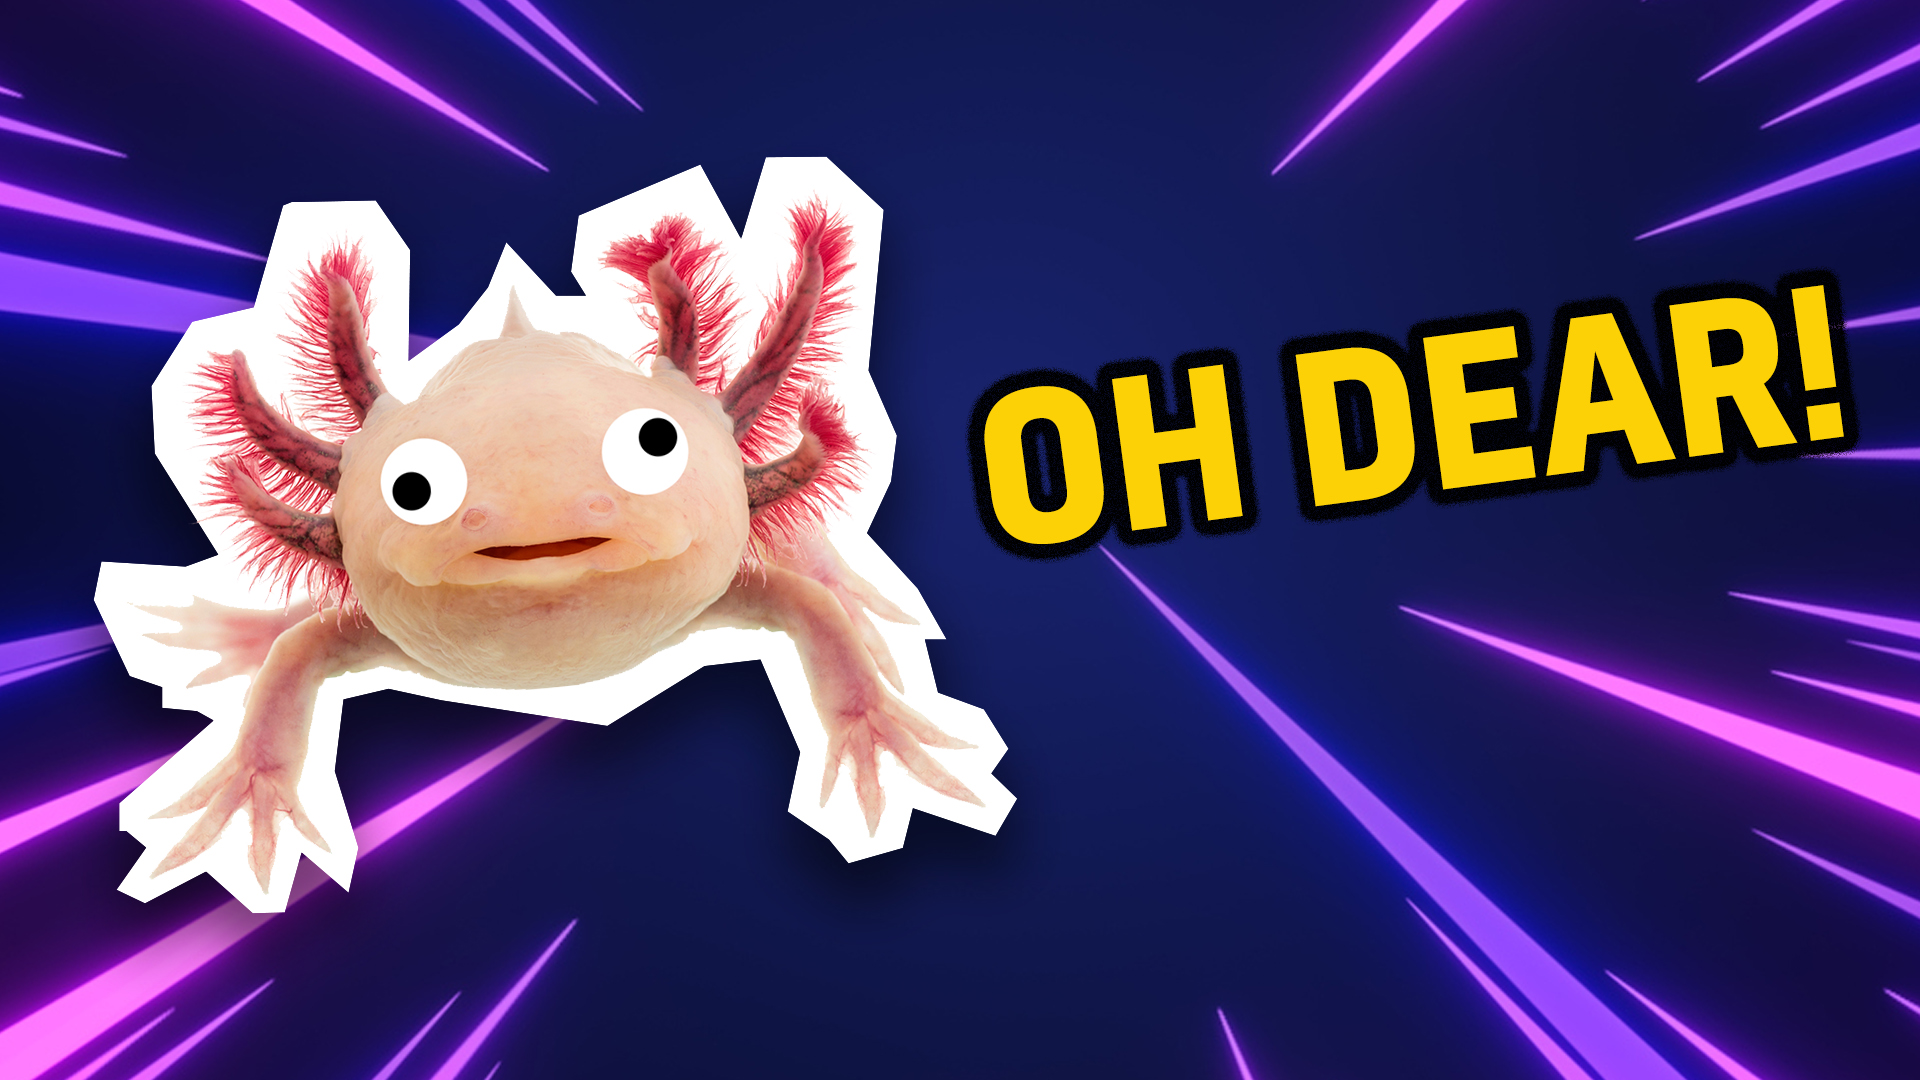 Axolotl says oh dear